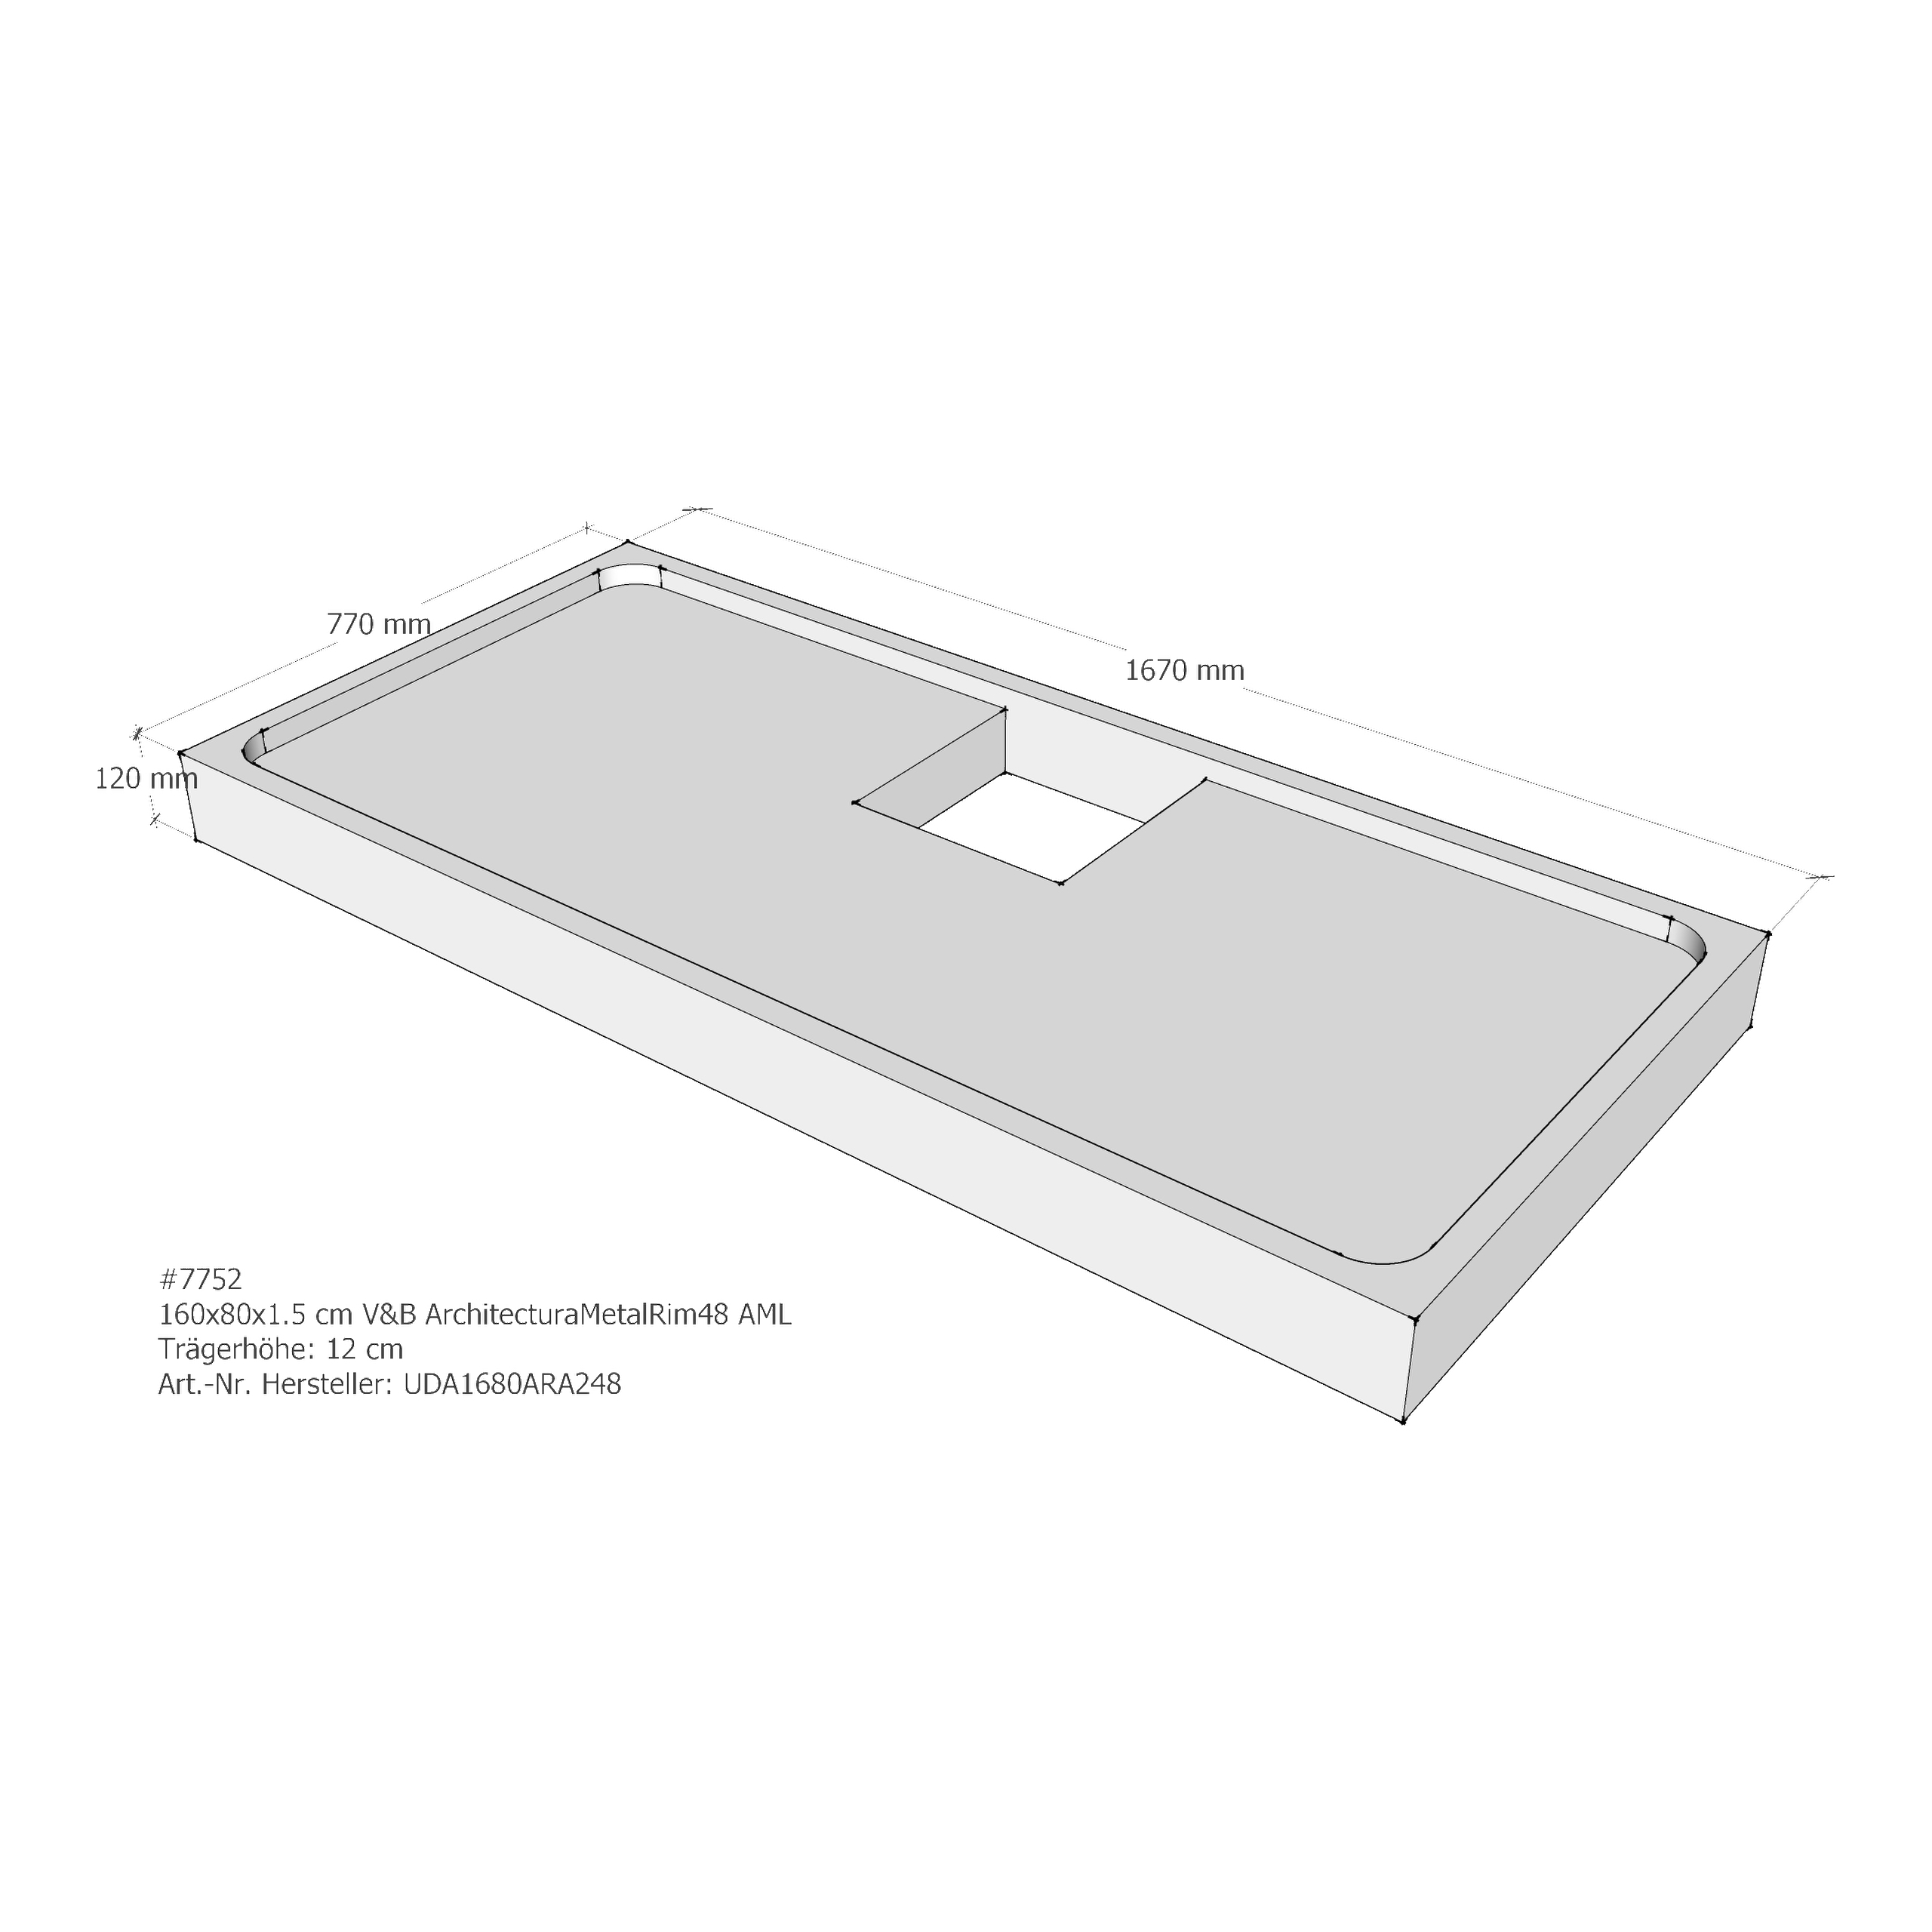 LDG Duschwannenträger für Villeroy & Boch ArchitecturaMetalRim48 160 × 80 × 1,5 cm, LD7752 Sonderpreis